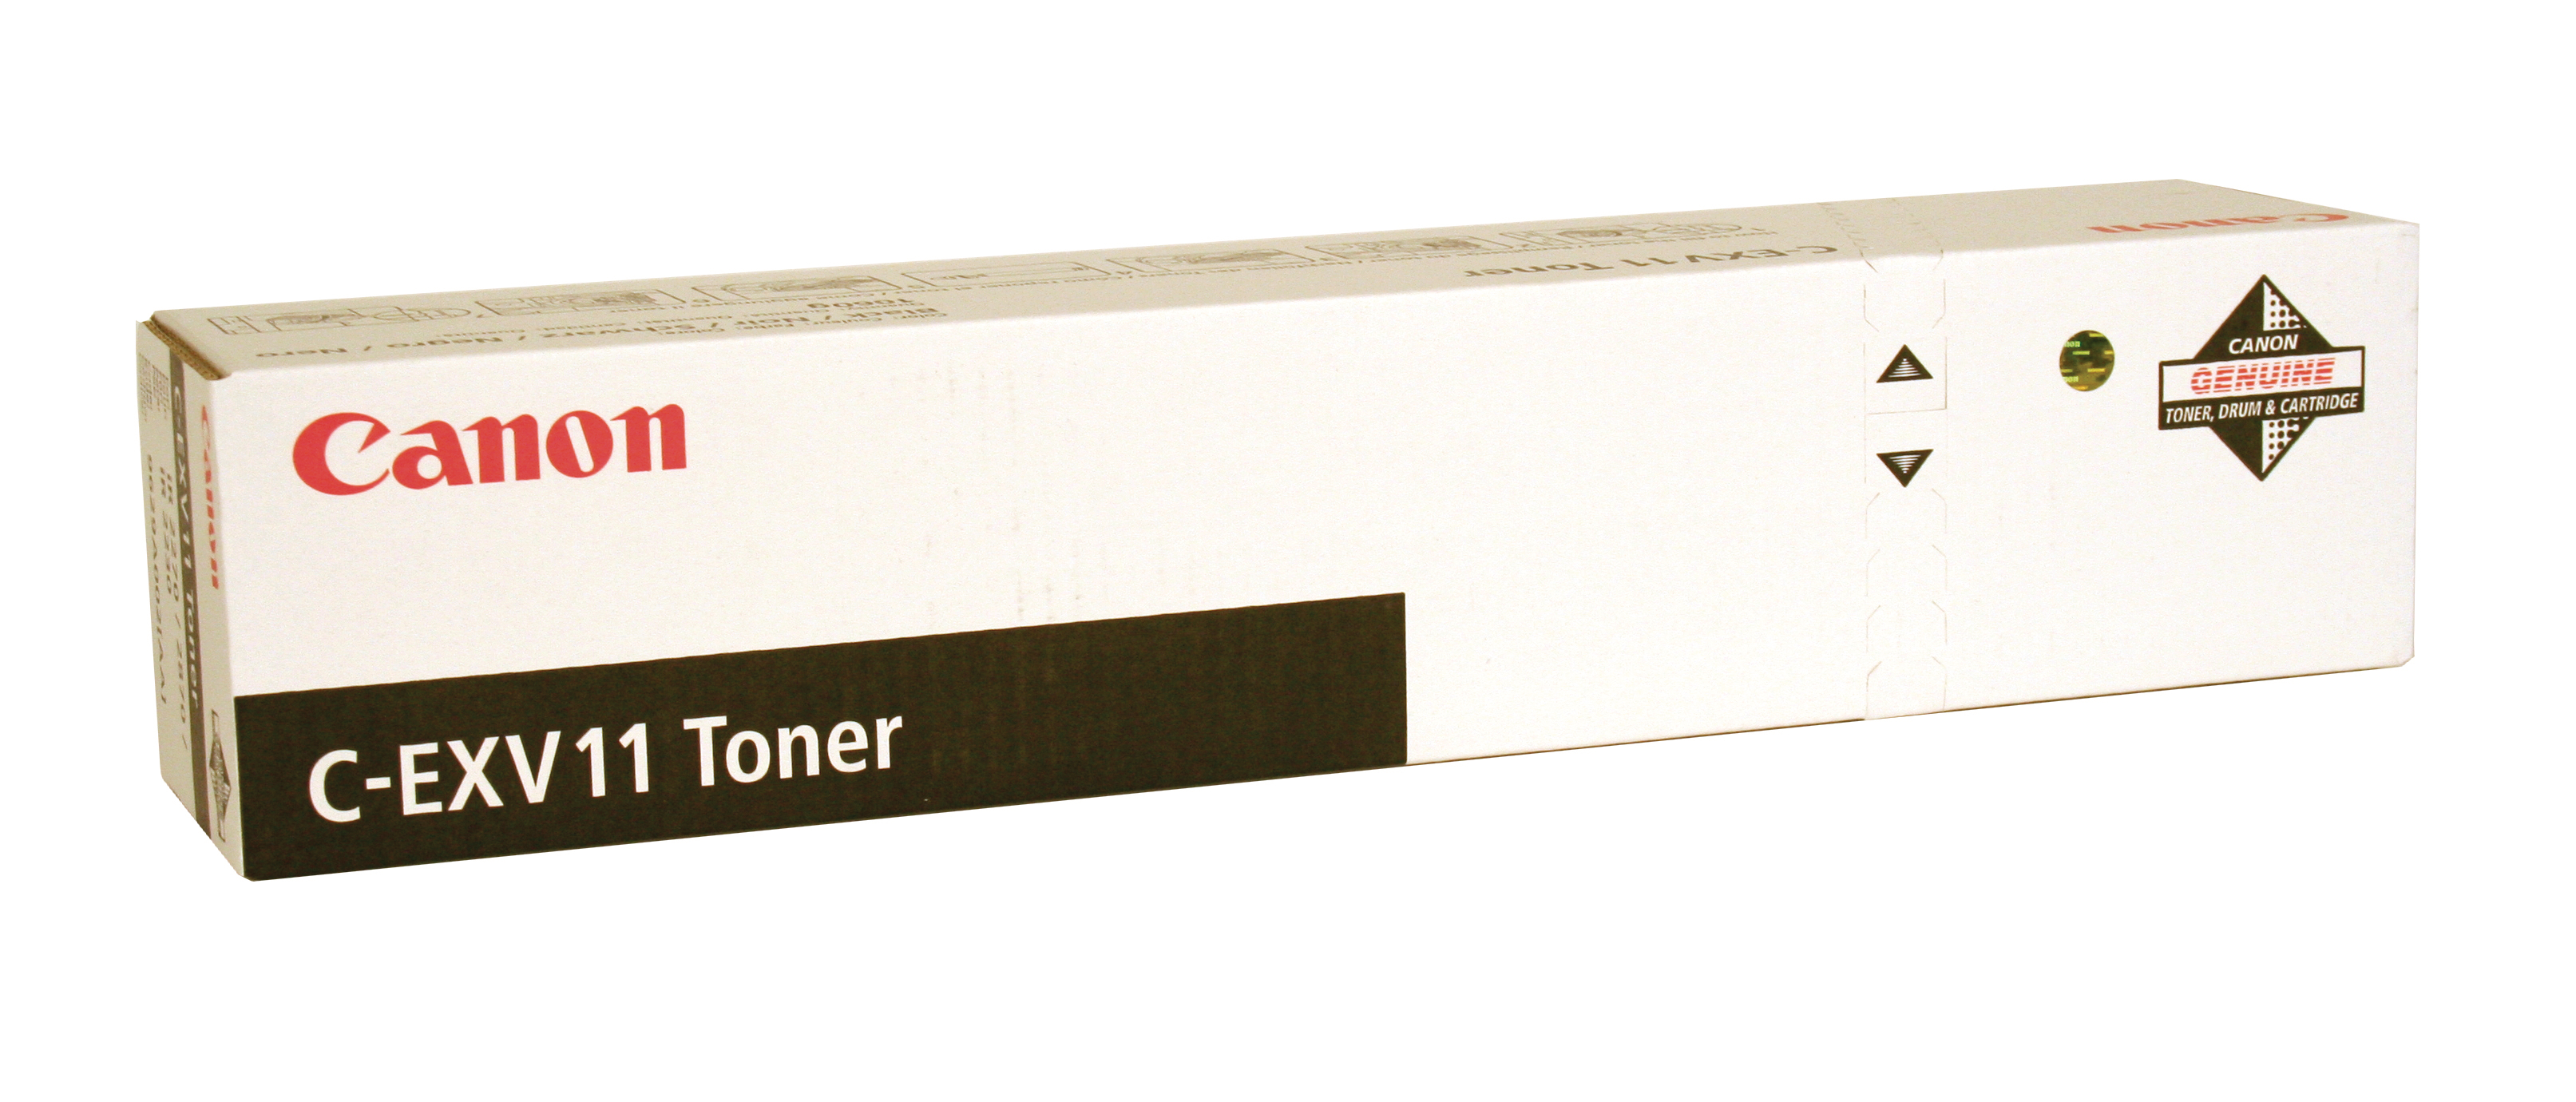 CANON Toner noir C-EXV11 IR 2270/2870 21'000 pages